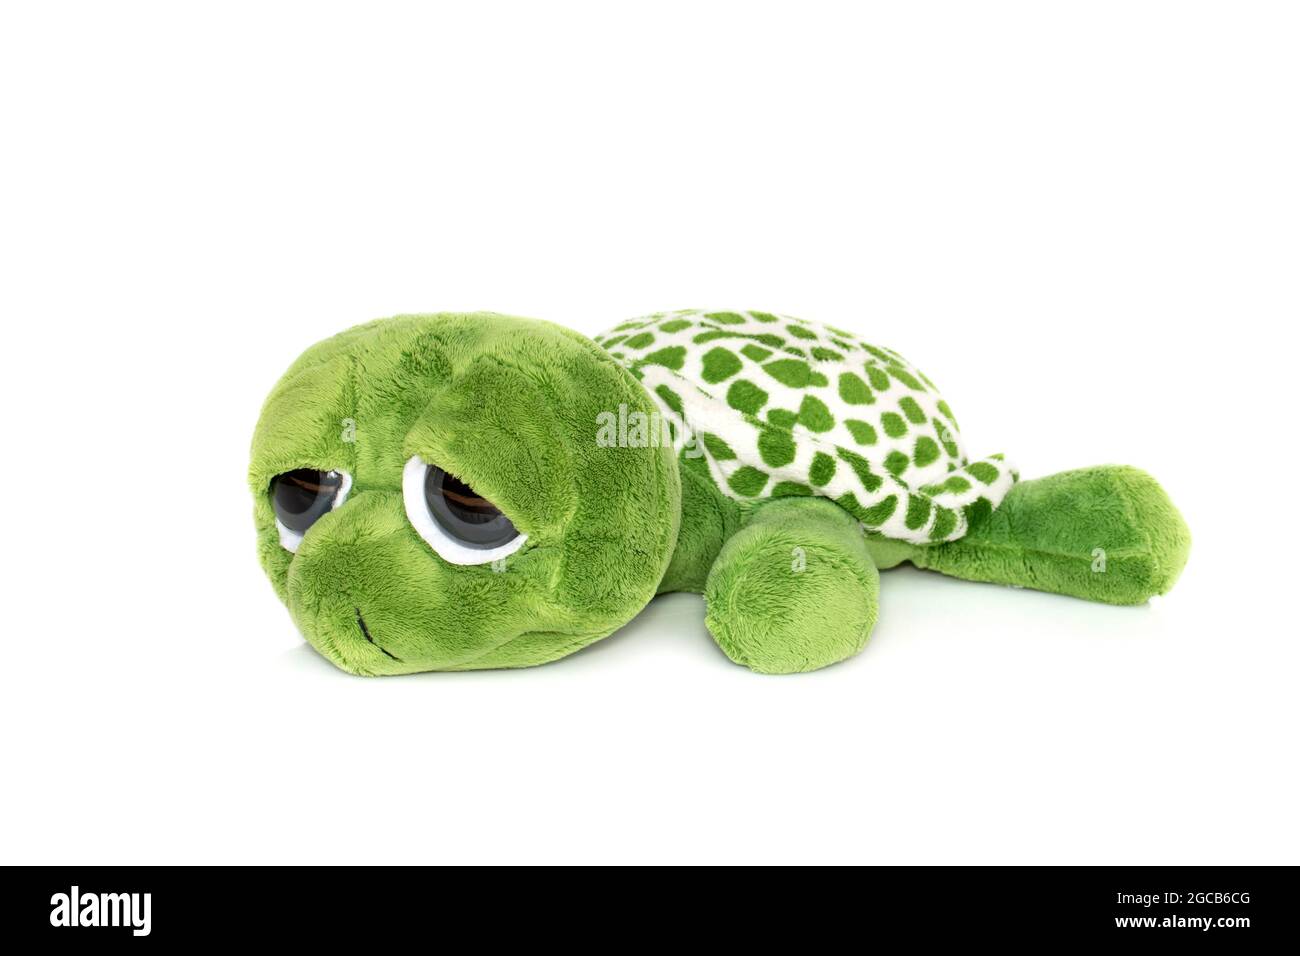 Image d'une poupée de tortue verte isolée sur fond blanc. Poupées animales. Banque D'Images